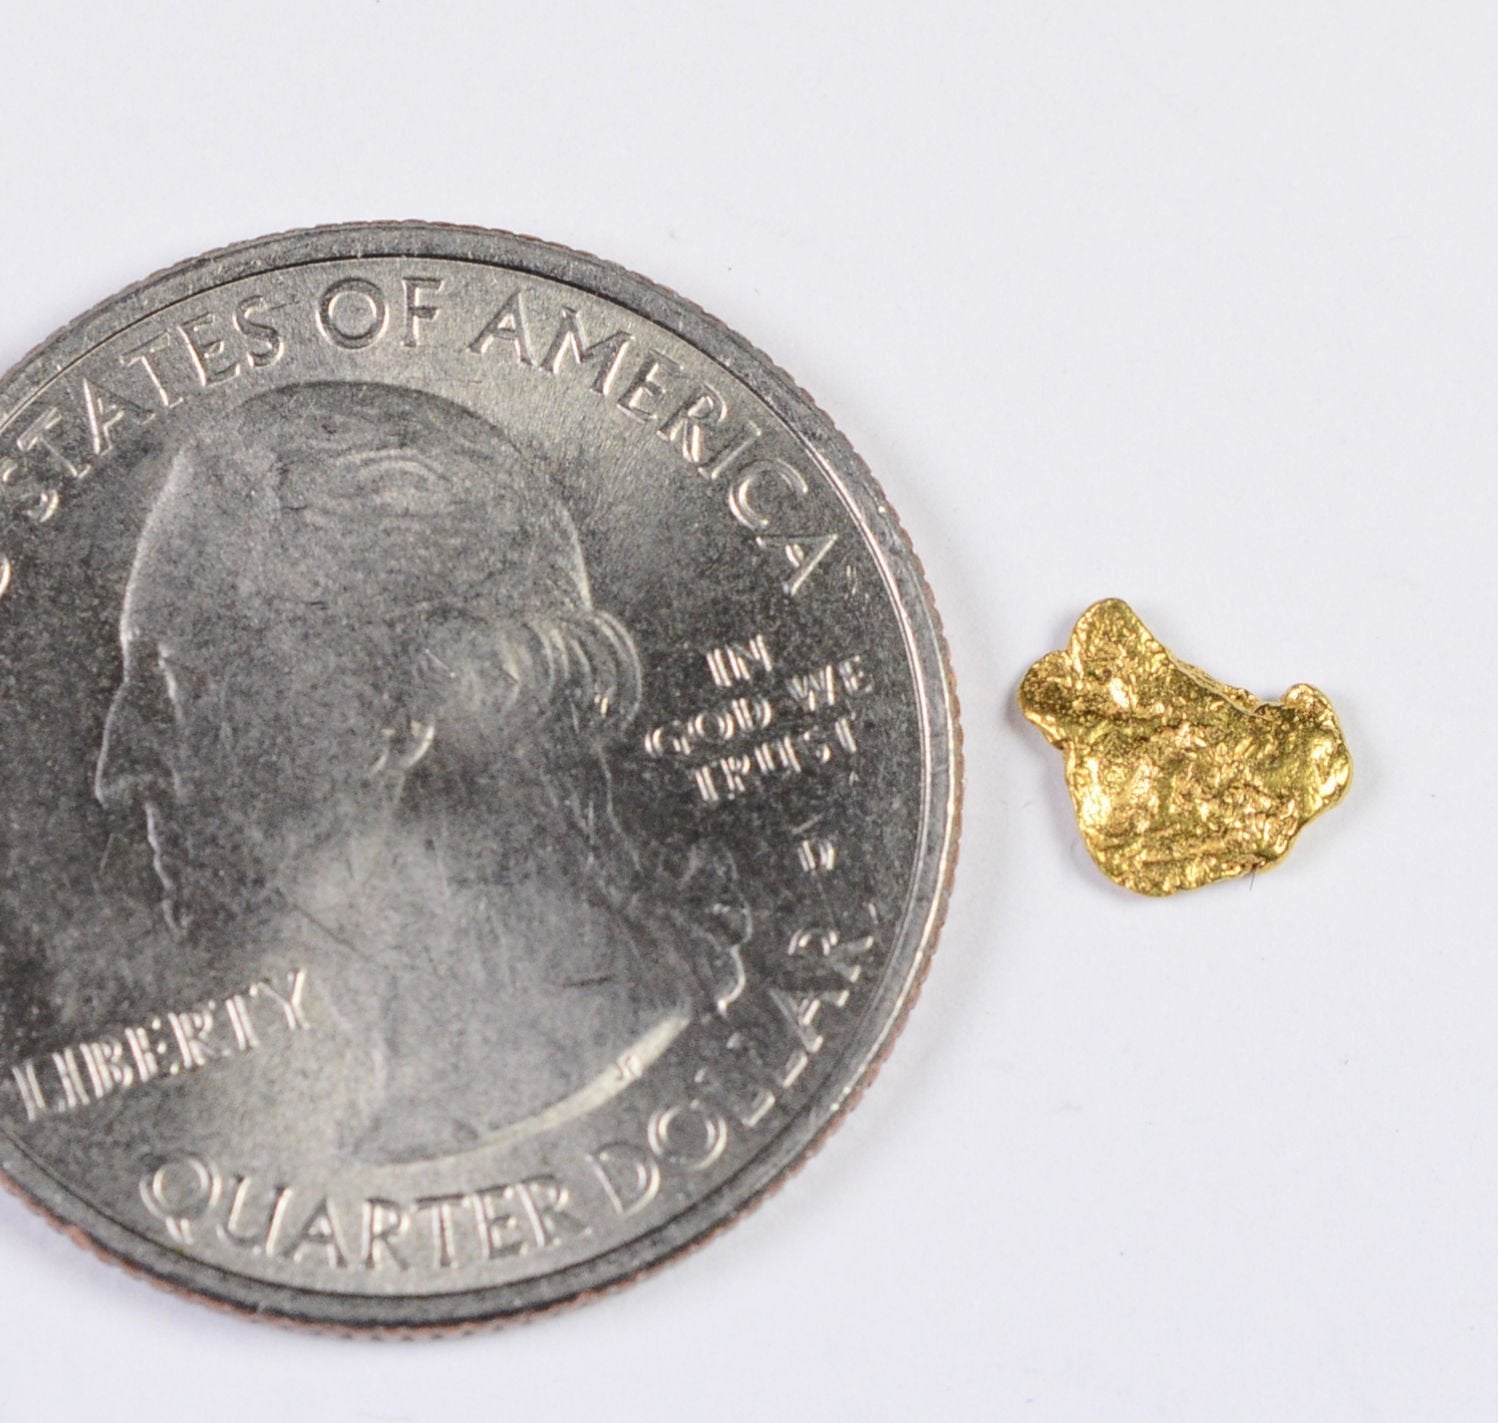 Alaskan-Yukon Bc Gold Rush Natural Nugget 0.24 Grams Genuine Alaska .10-.34